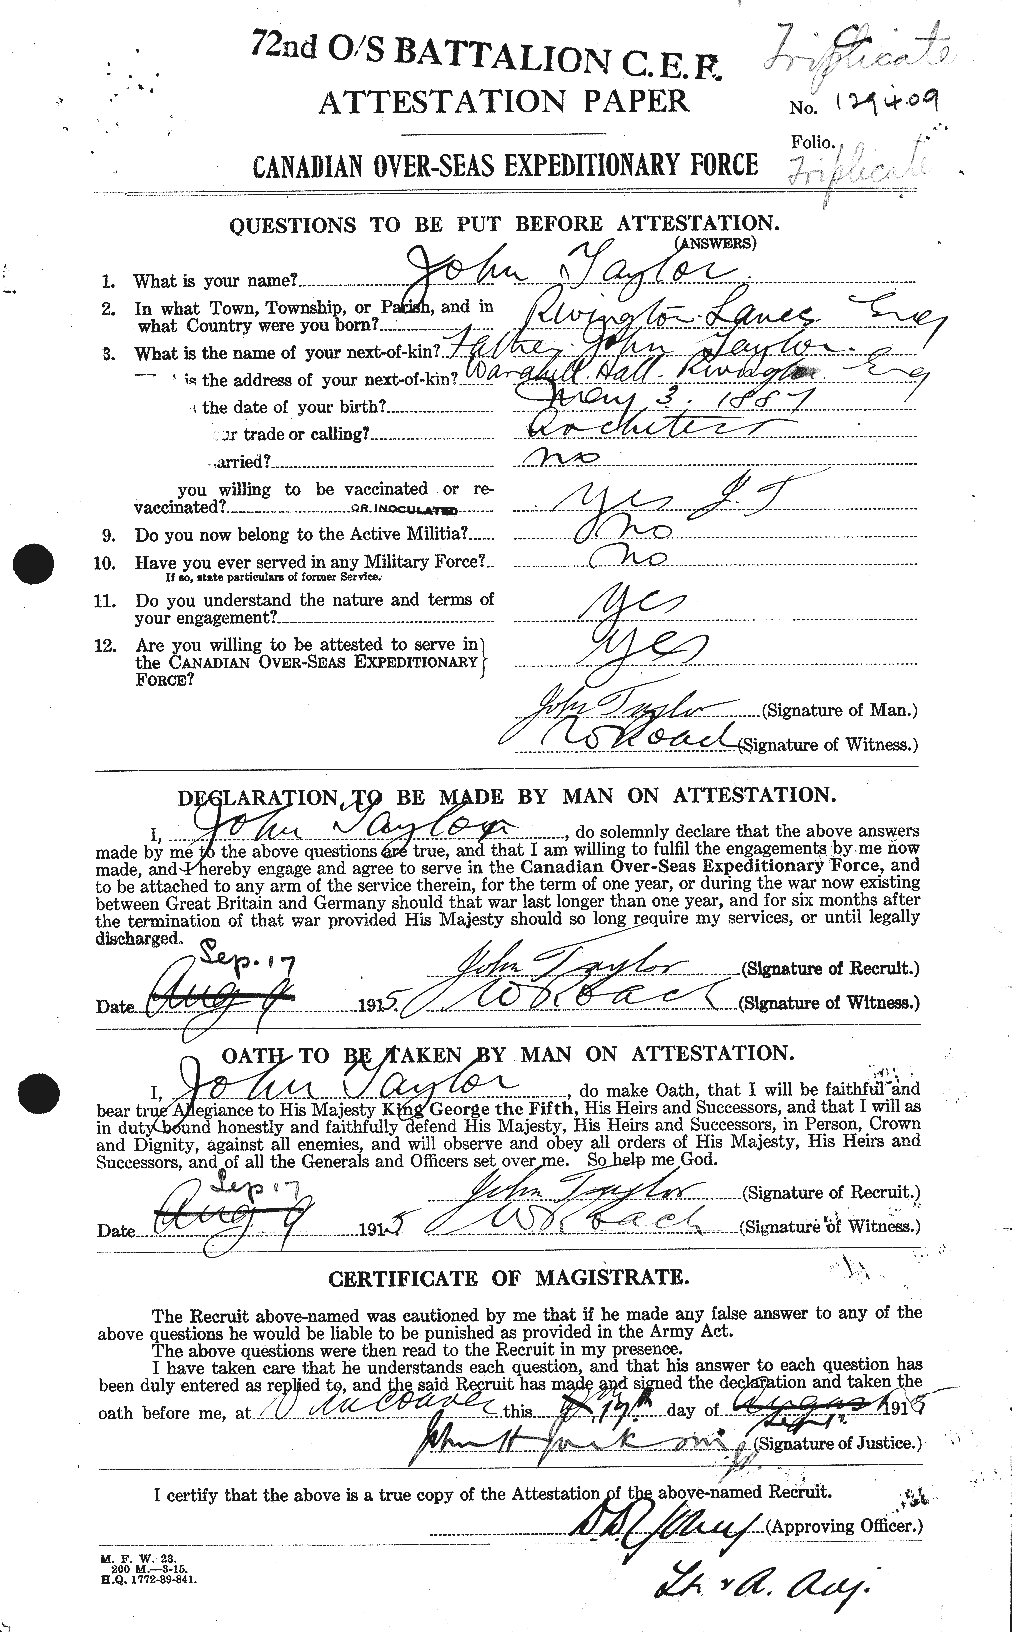 Dossiers du Personnel de la Première Guerre mondiale - CEC 626986a